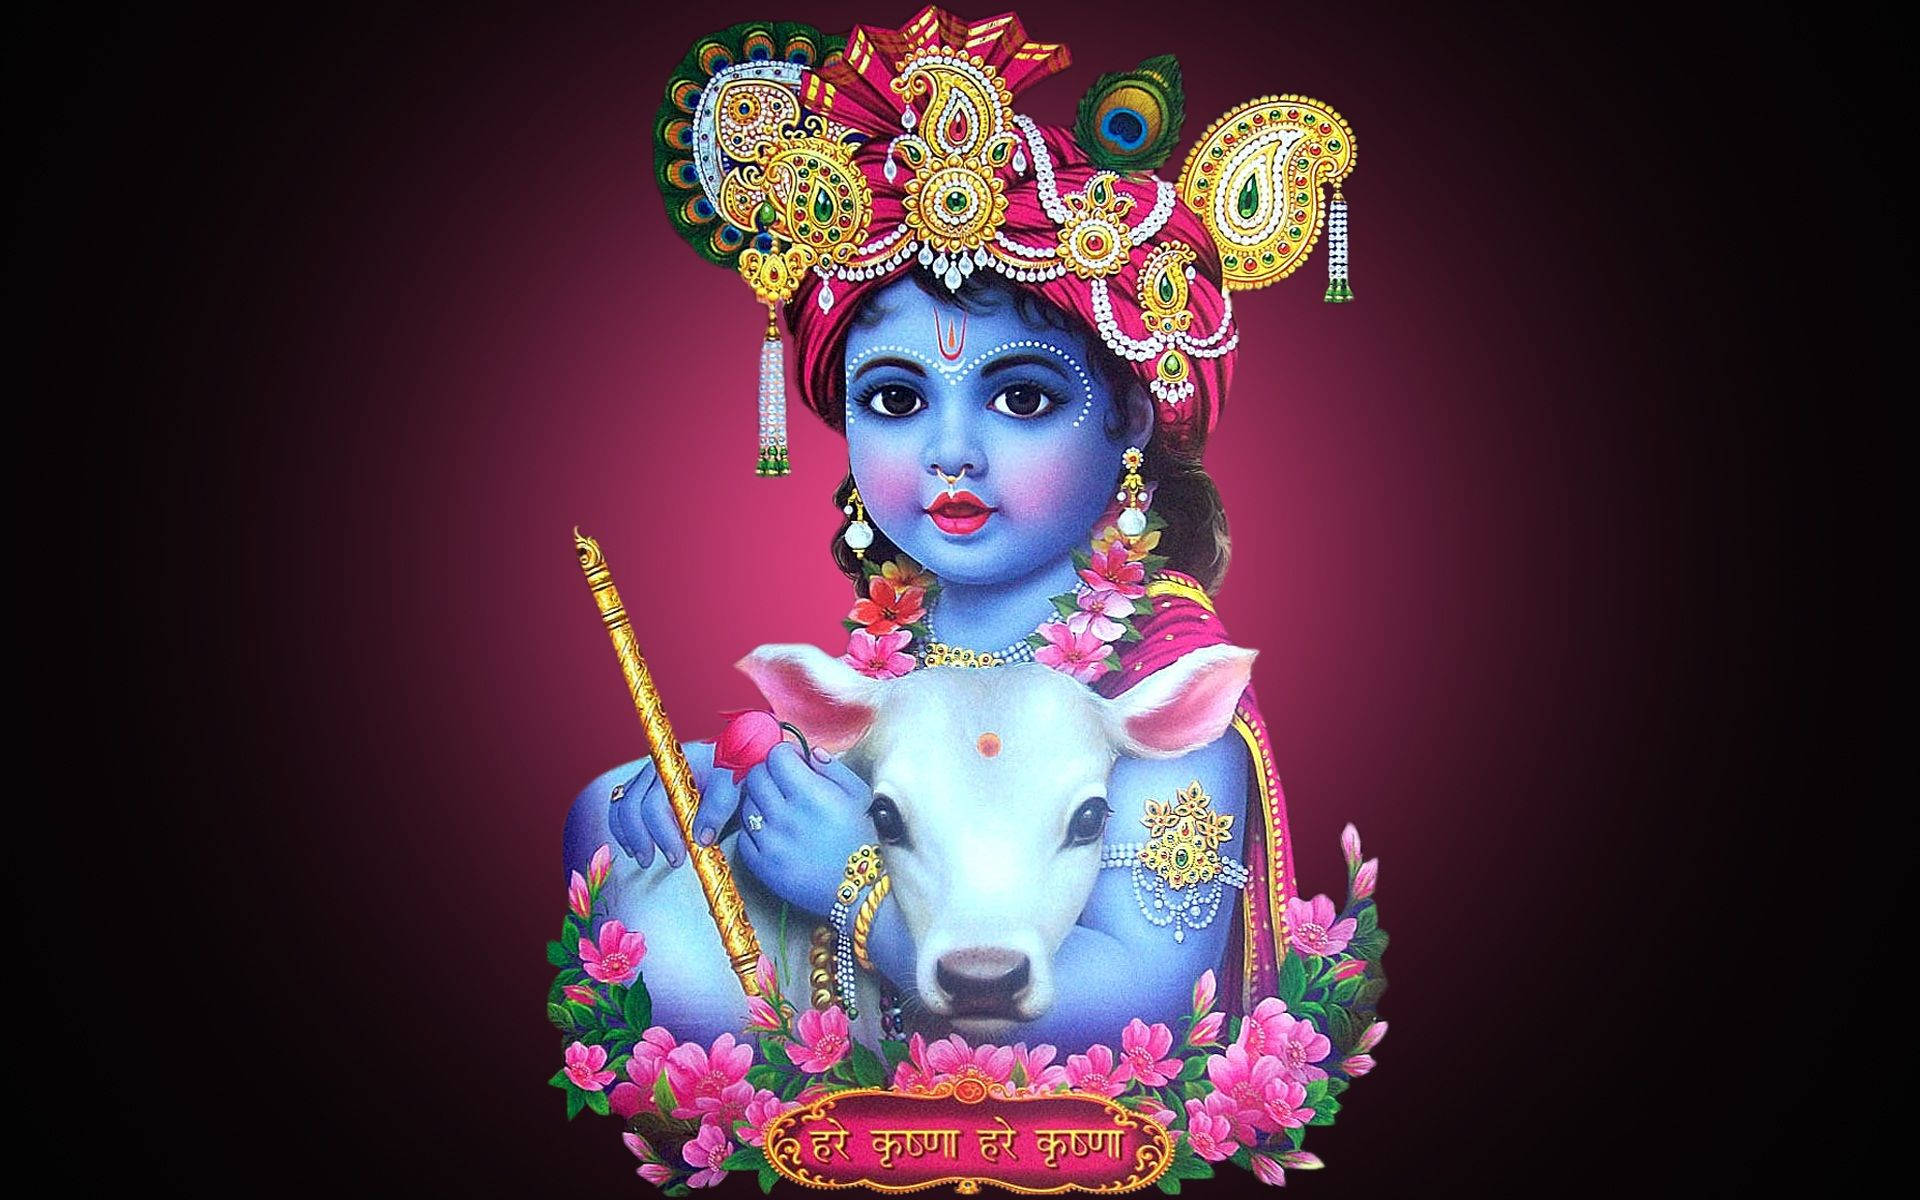 Violet Child Krishna Art